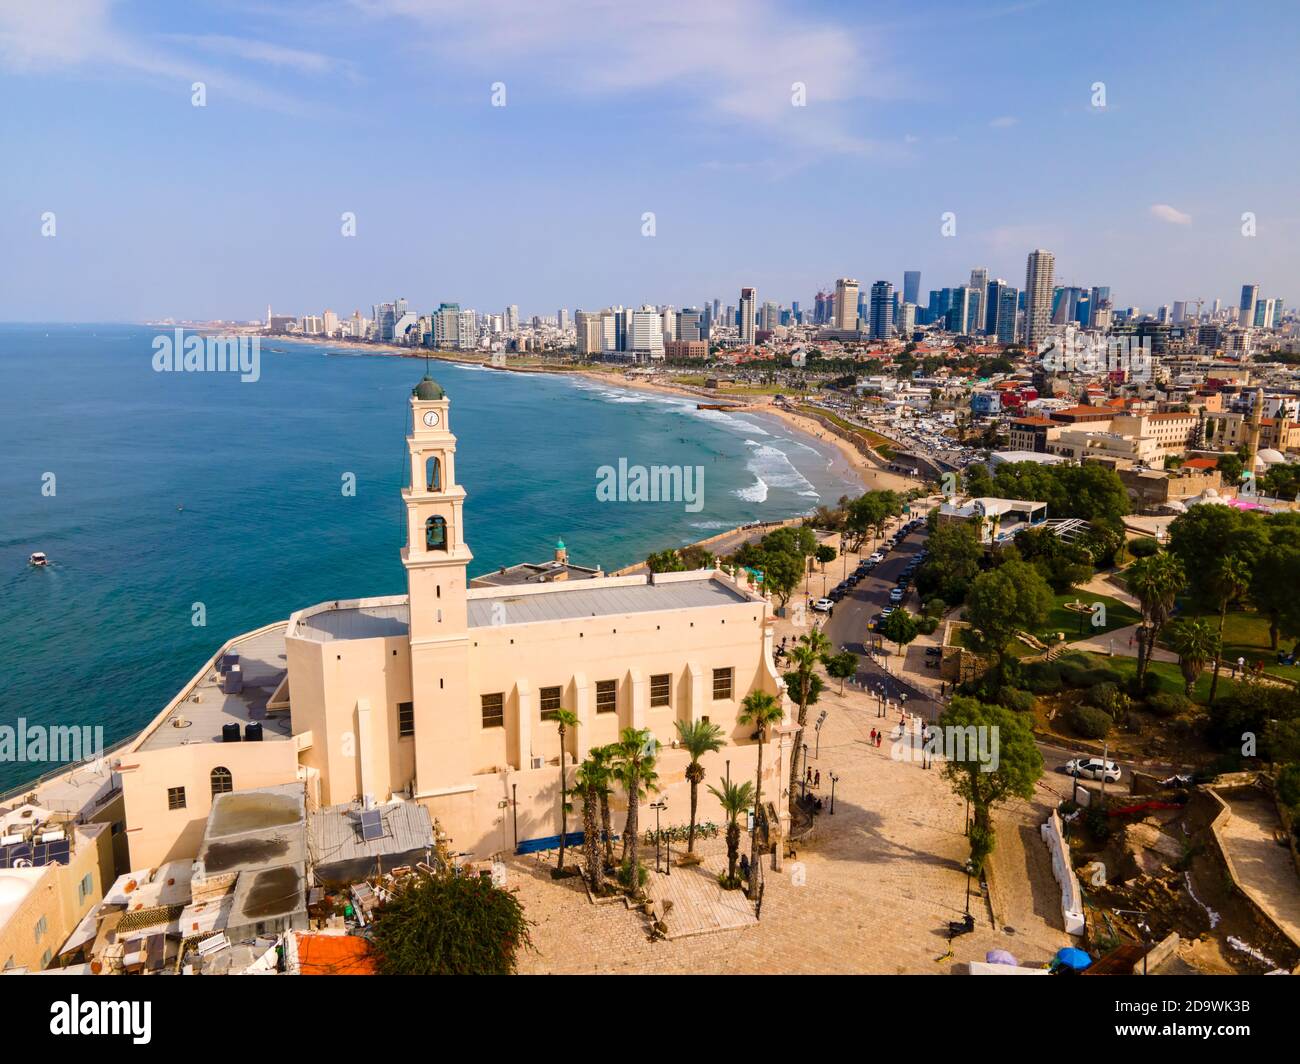 Tel Aviv - Jaffa, vista dall'alto. Città moderna con grattacieli e la città vecchia. Vista dall'alto. Israele, Medio Oriente. Fotografia aerea Foto Stock